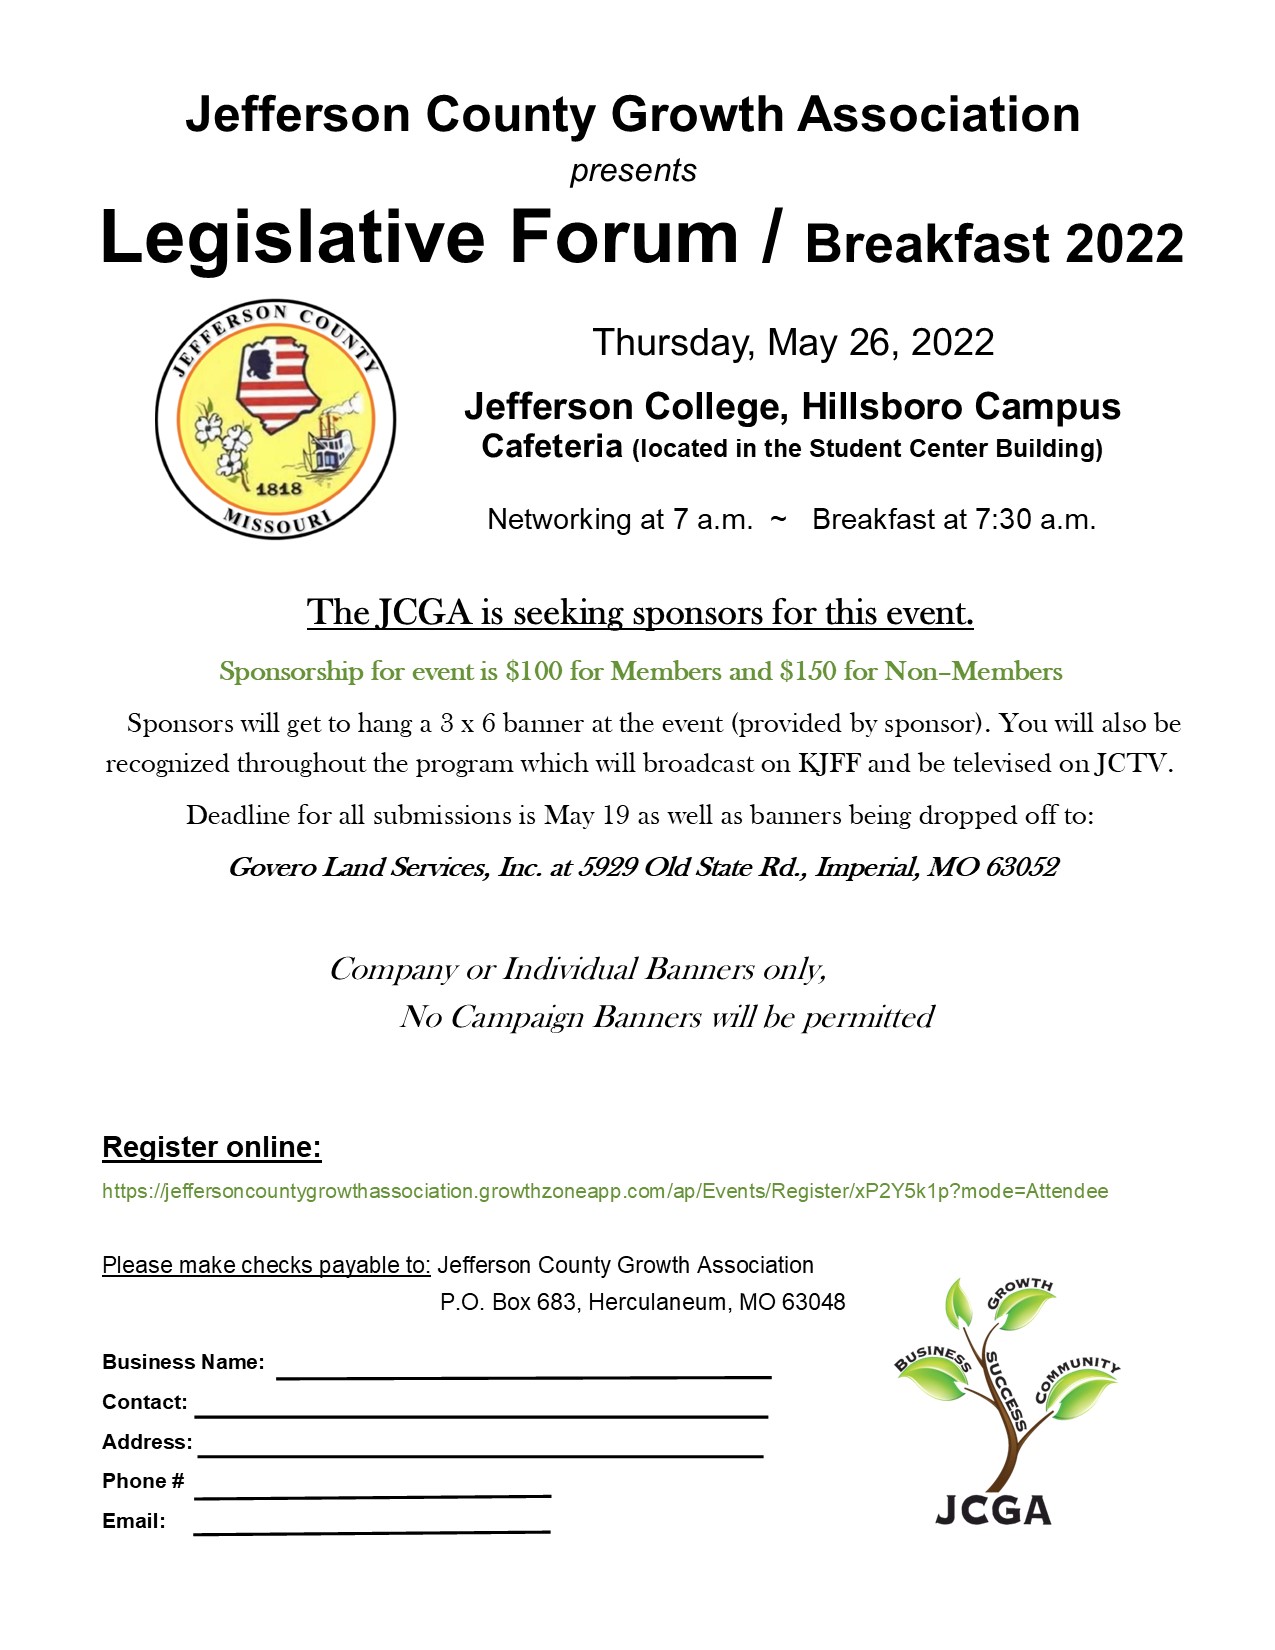 Sponsor Letter for 2022 Legislative Forum Breakfast